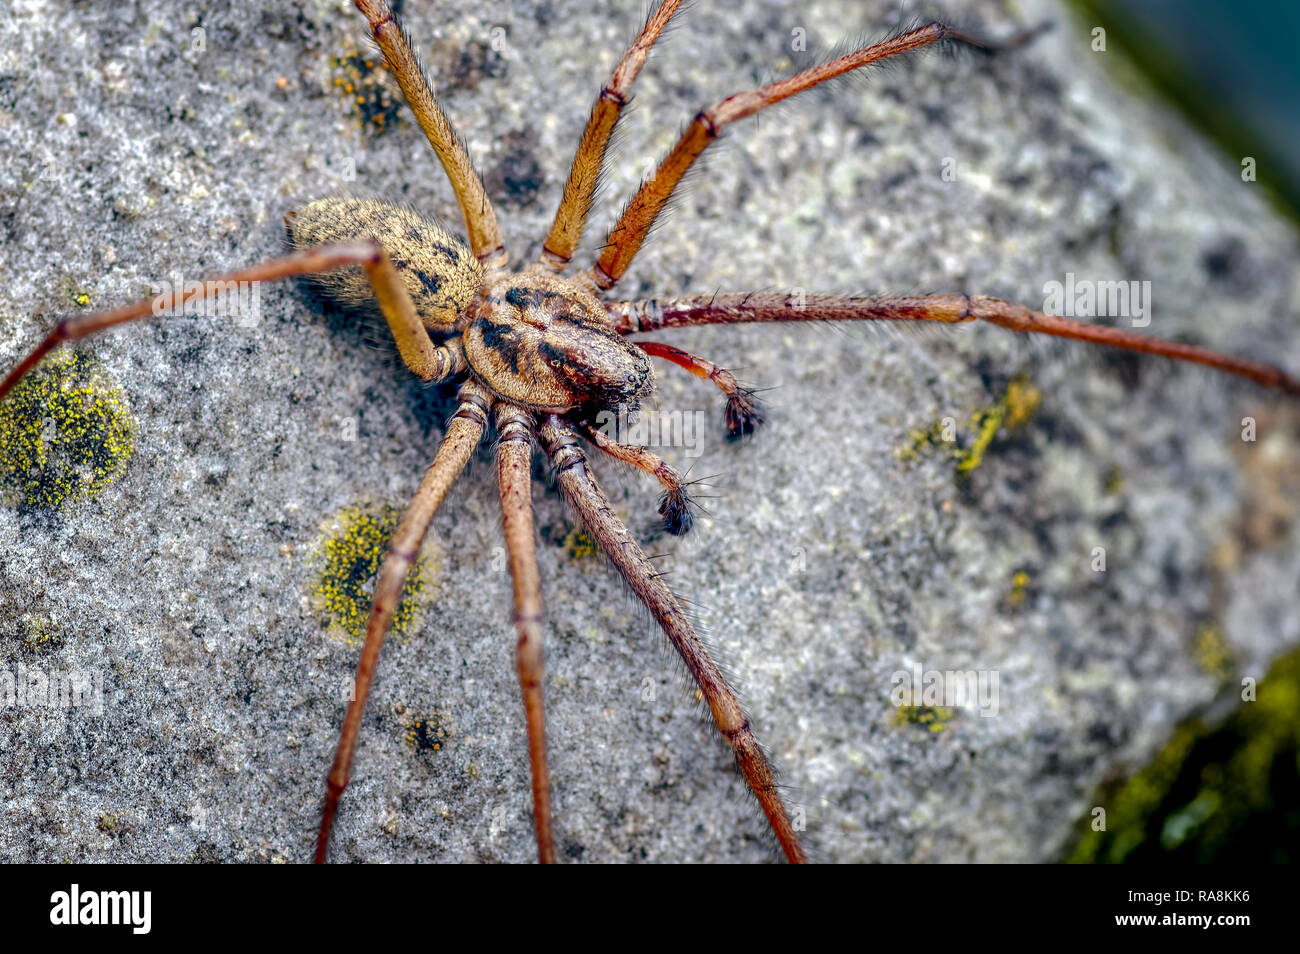 Esta es una casa gigante masculino araña Tegenaria atrica Eratigena gigantea llama ahora. Es normal ver el macho como la hembra permanece oculta. Foto de stock